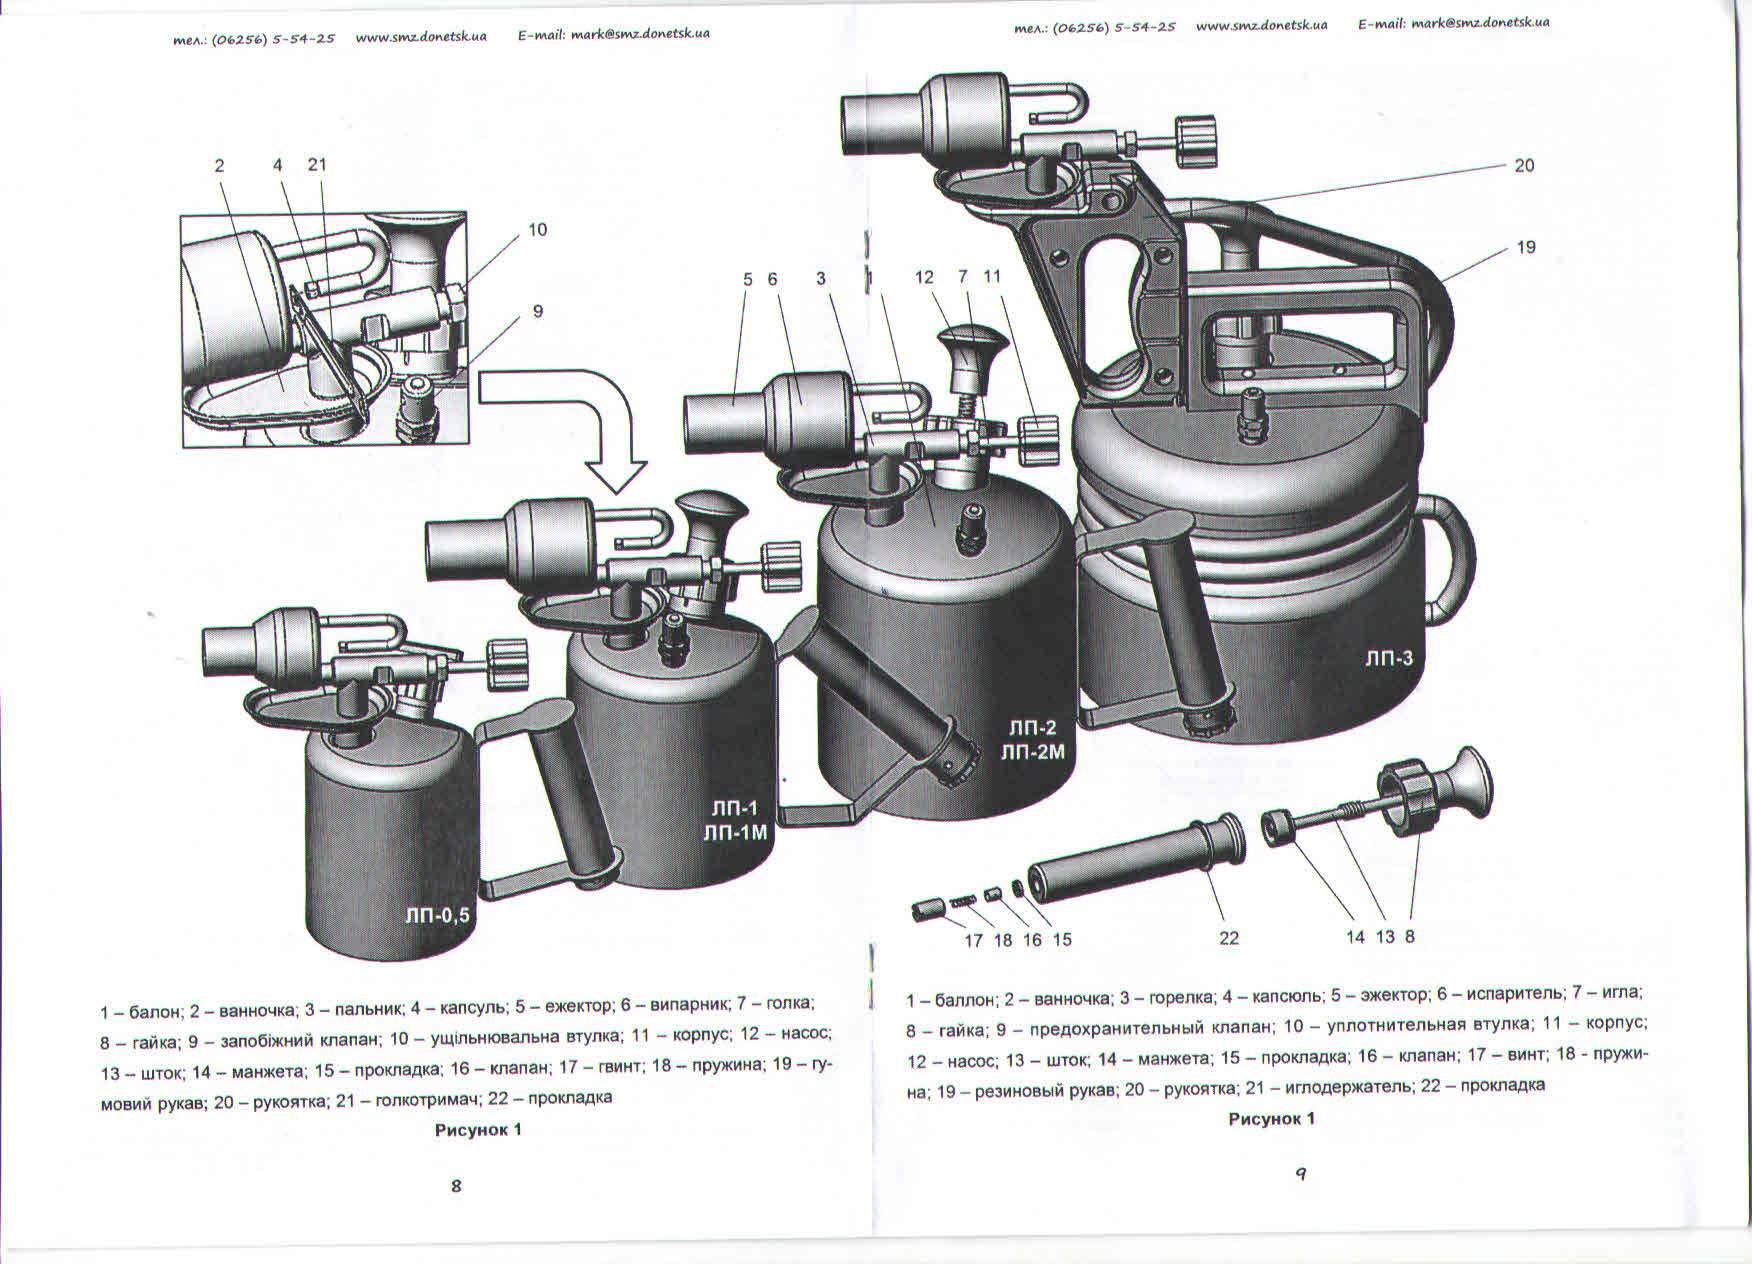 Газовые горелки своими руками: техника, разбор типов и конструкций исходя из цели